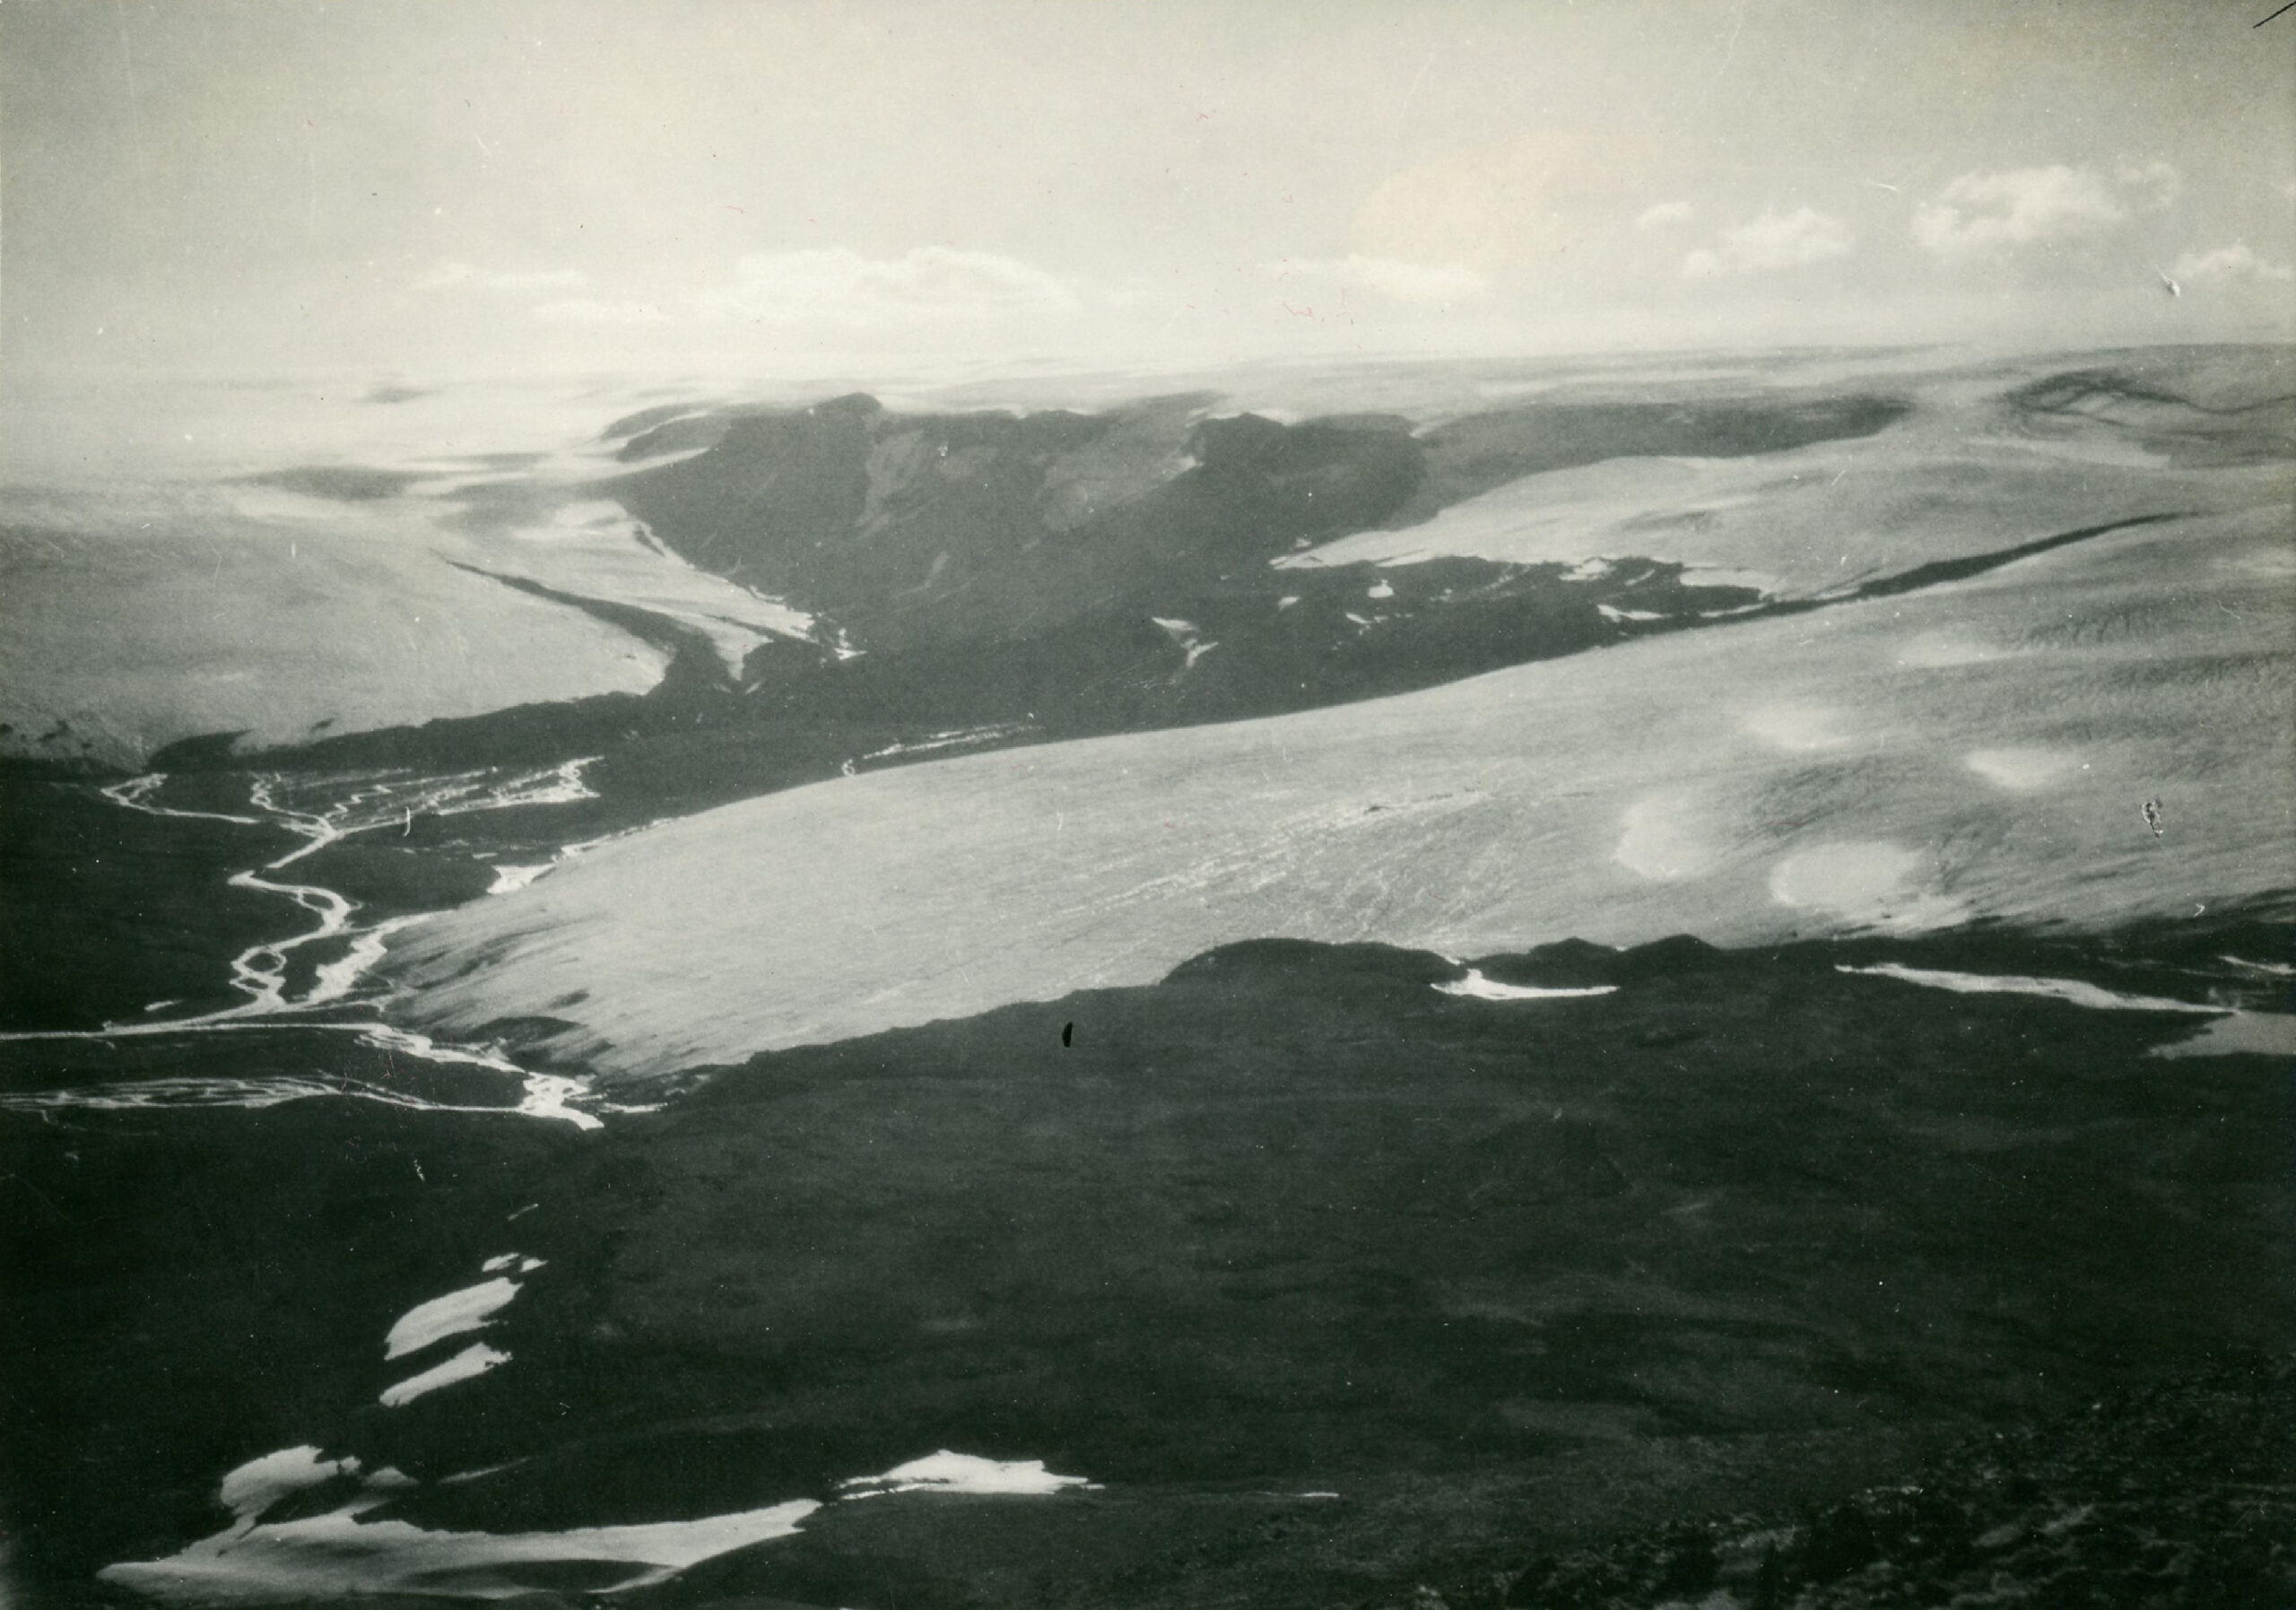 Leiðarjökull (links) en Þjófadalajökull in 1927-1929. Fotograaf: Hans Kuhn, collectie Nationaal Museum IJsland, Lpr/2003-576-21.